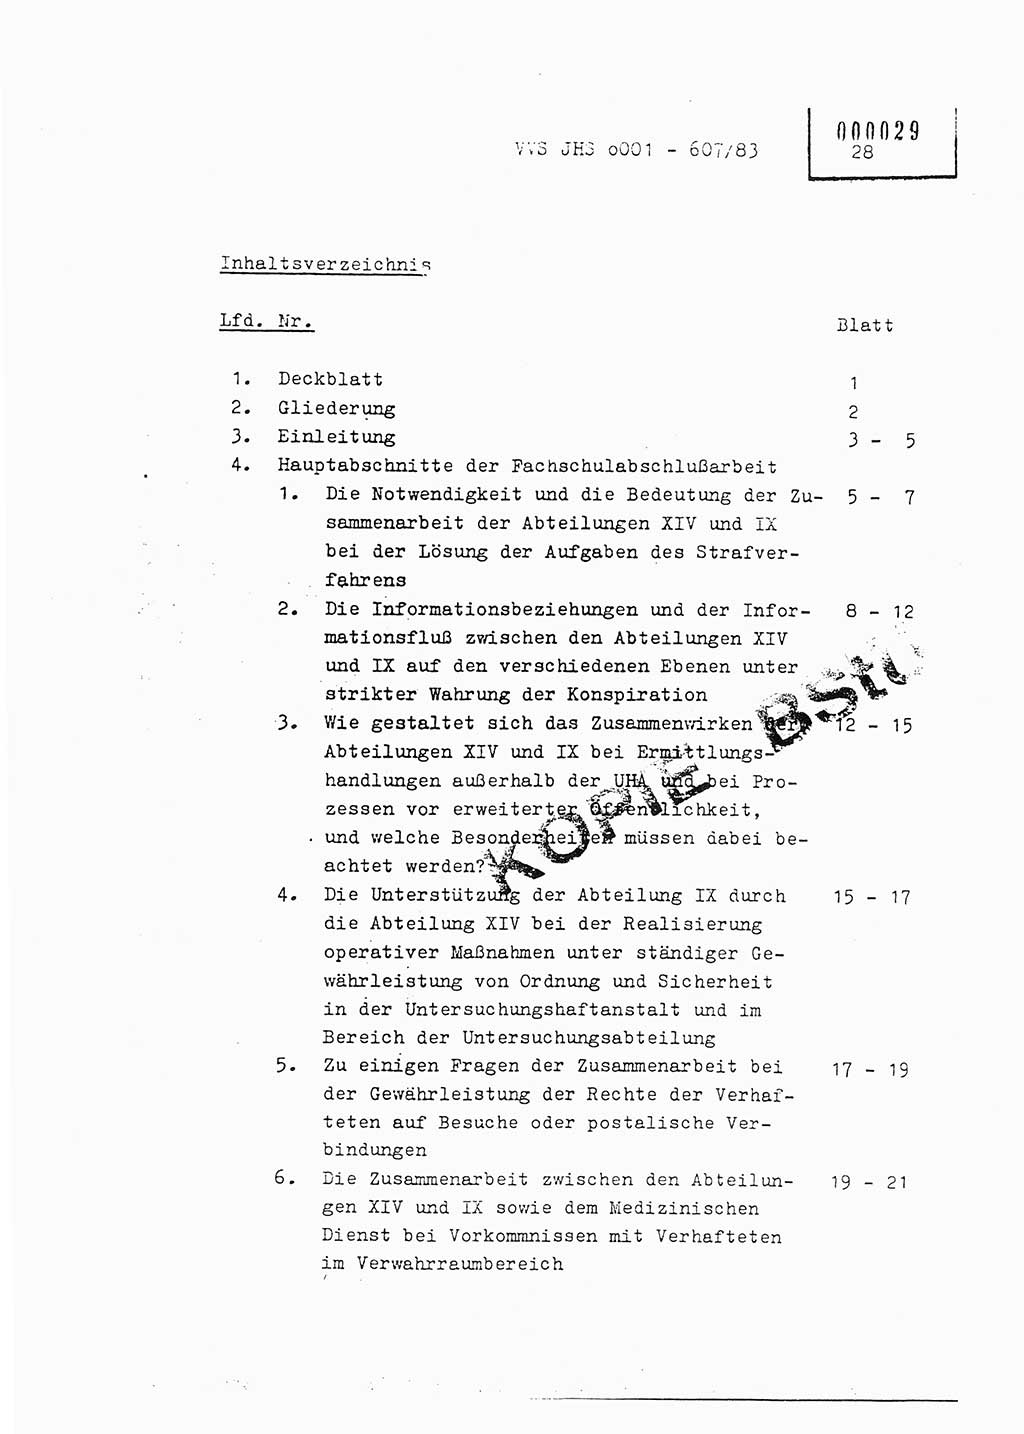 Fachschulabschlußarbeit Oberleutnant Hans-Joachim Saltmann (BV Rostock Abt. ⅩⅣ), Ministerium für Staatssicherheit (MfS) [Deutsche Demokratische Republik (DDR)], Juristische Hochschule (JHS), Vertrauliche Verschlußsache (VVS) o001-607/83, Potsdam 1983, Seite 28 (FS-Abschl.-Arb. MfS DDR JHS VVS o001-607/83 1983, S. 28)